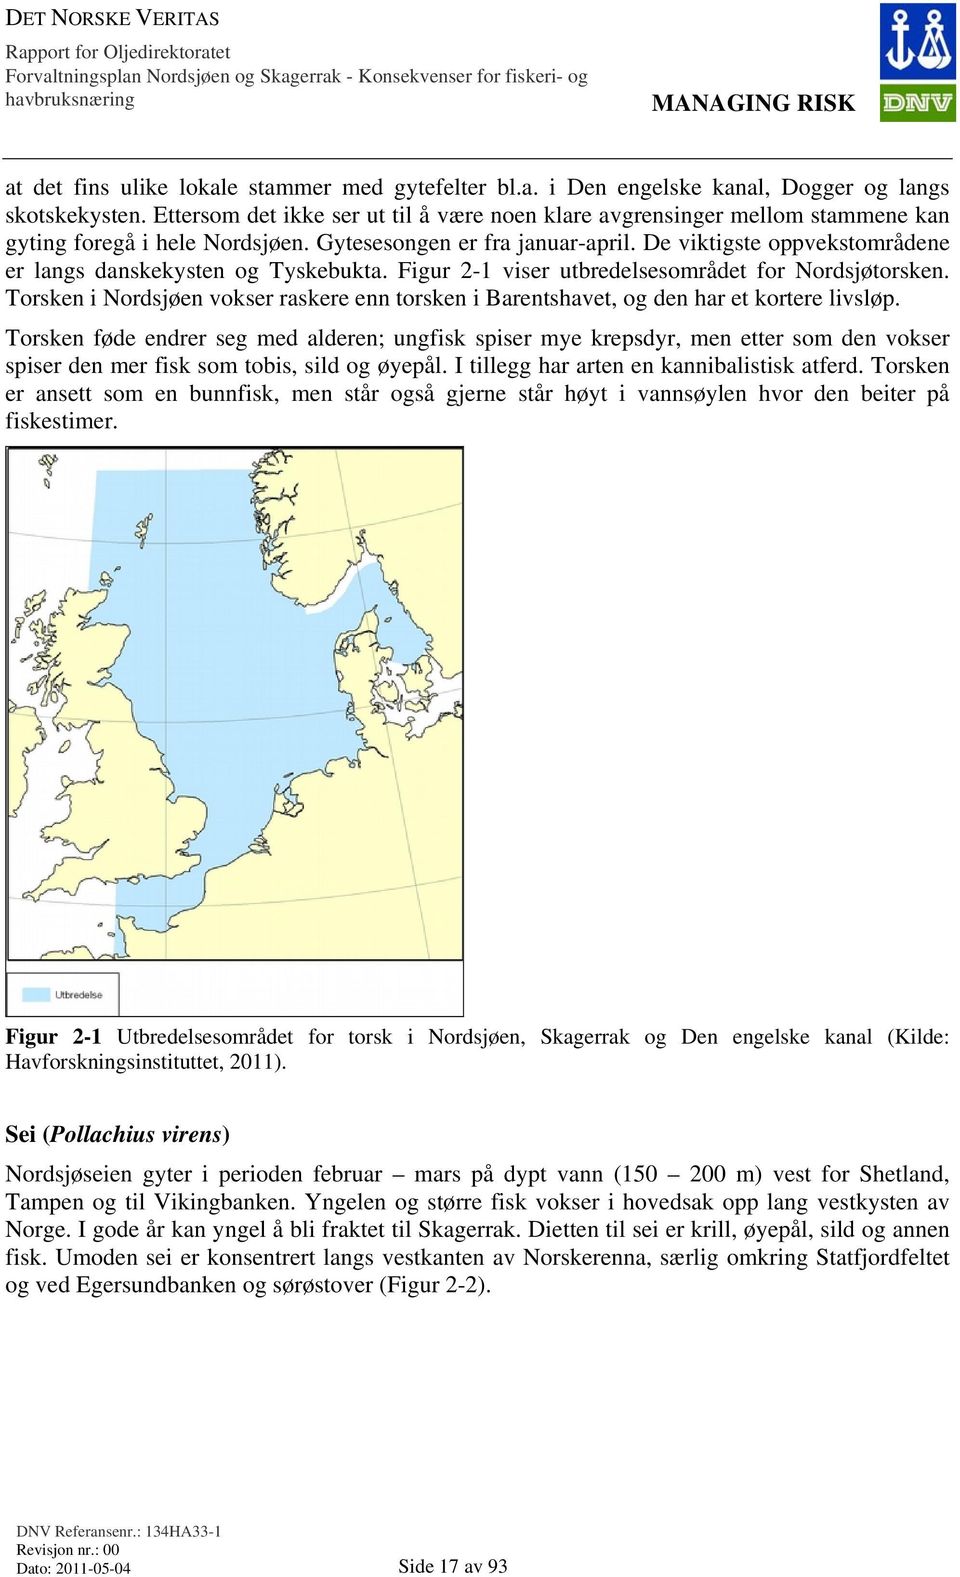 De viktigste oppvekstområdene er langs danskekysten og Tyskebukta. Figur 2-1 viser utbredelsesområdet for Nordsjøtorsken.